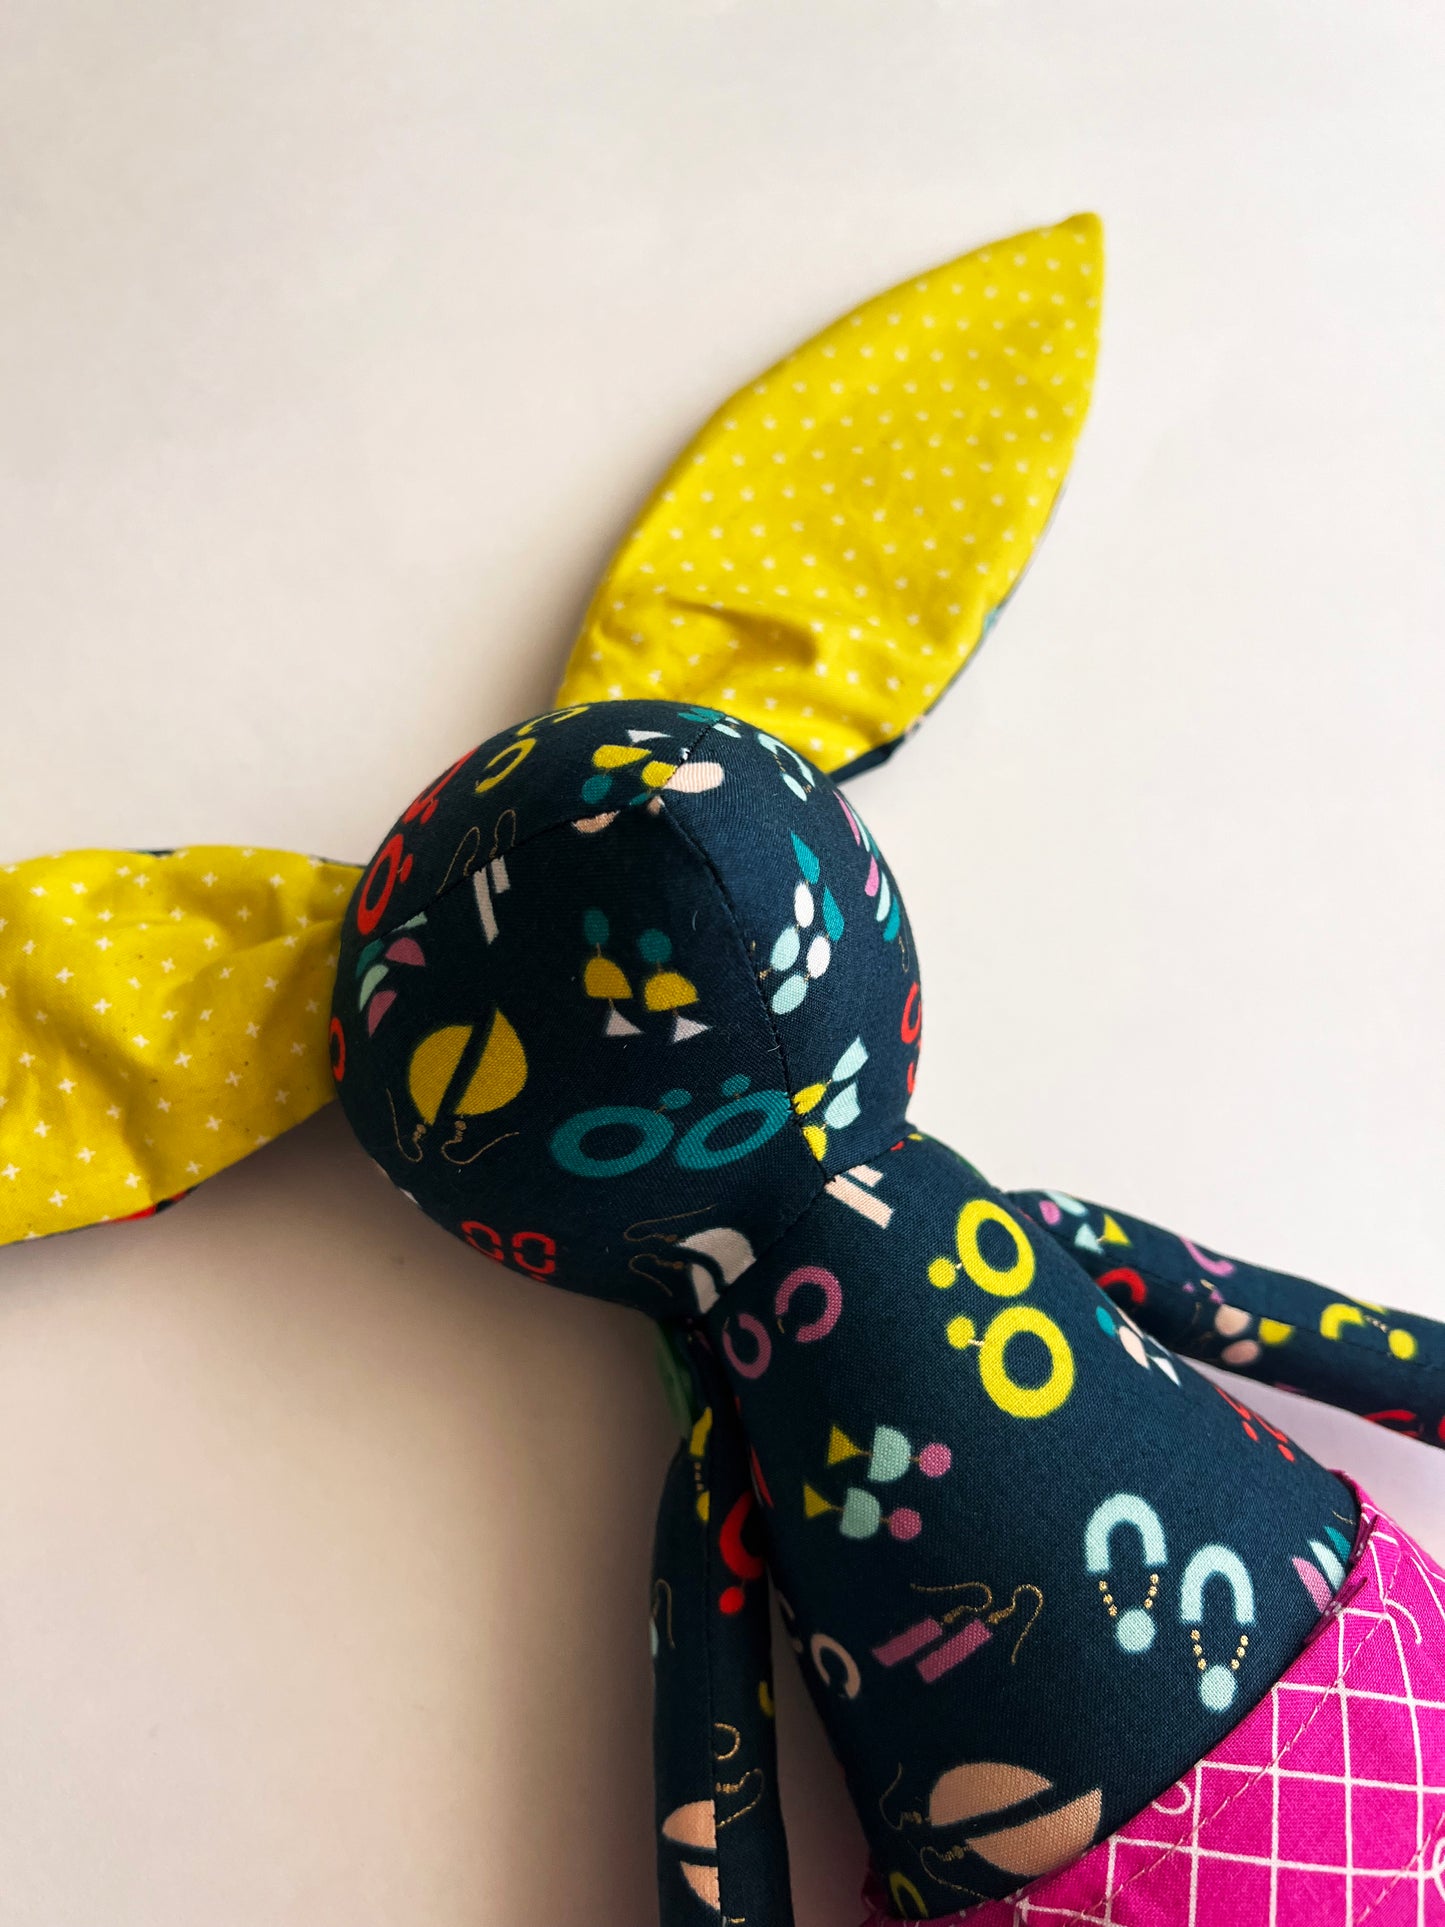 Bunny Rabbit Doll - Earrings